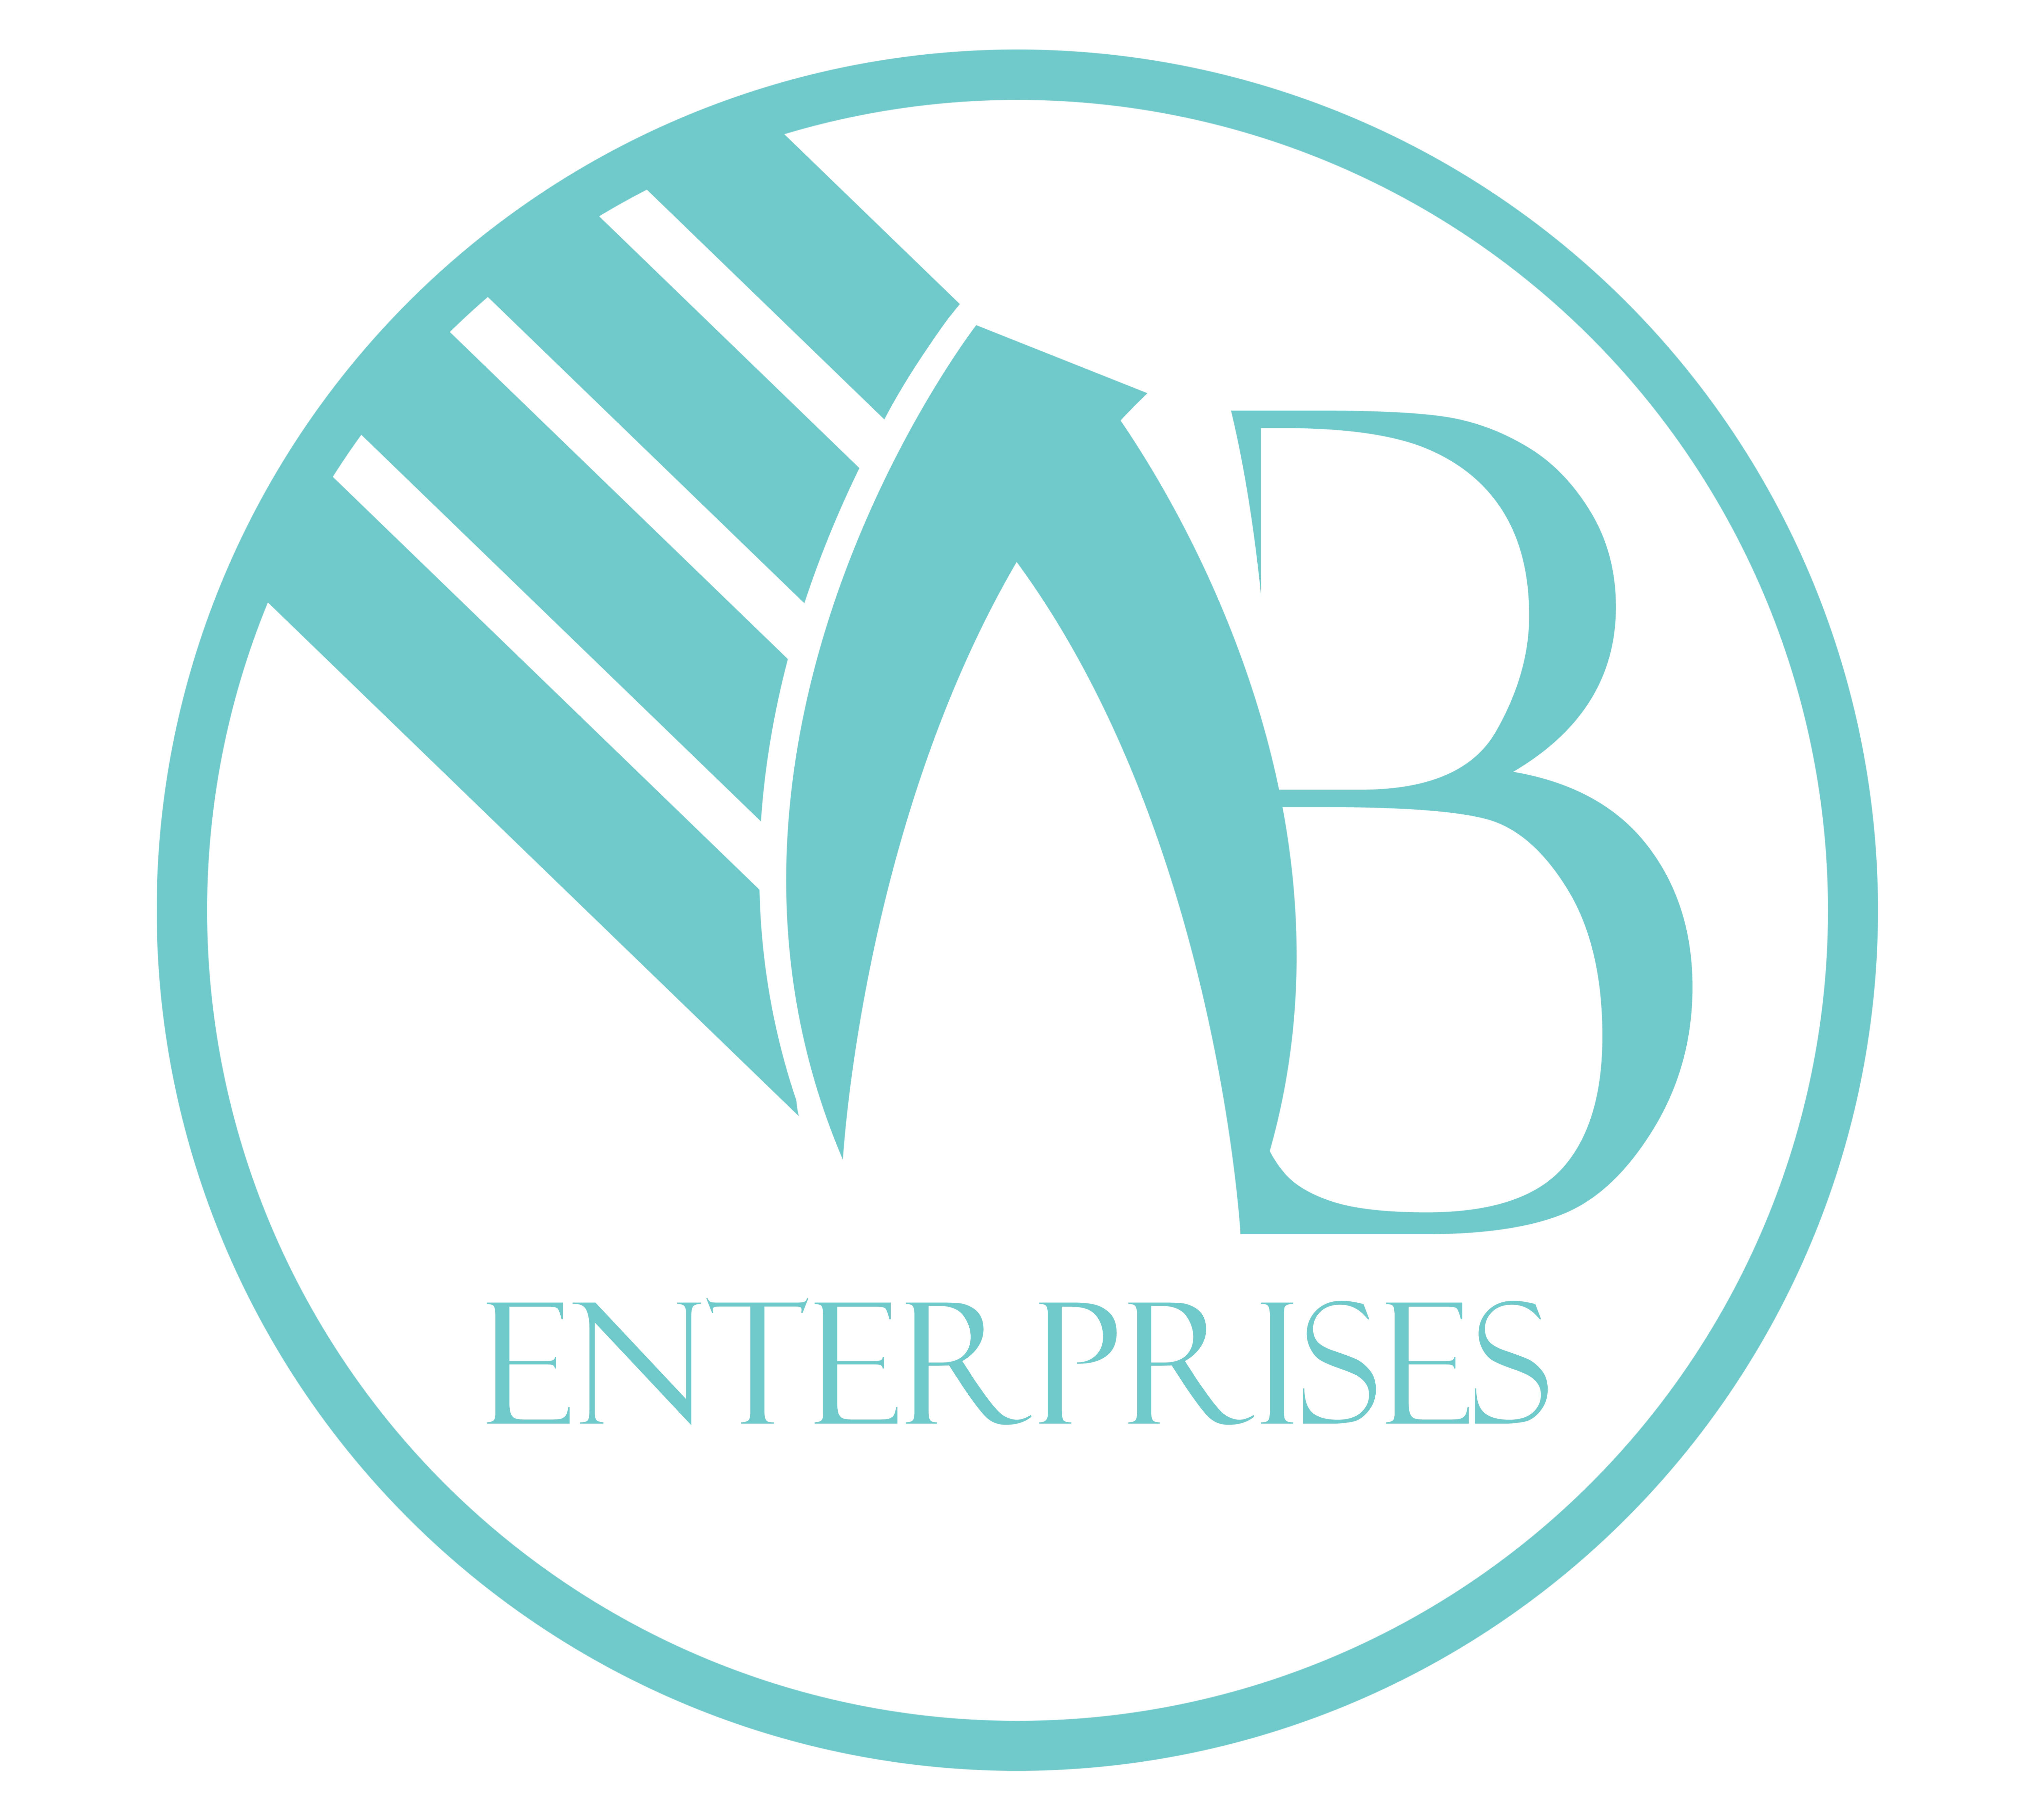 A B Enterprises